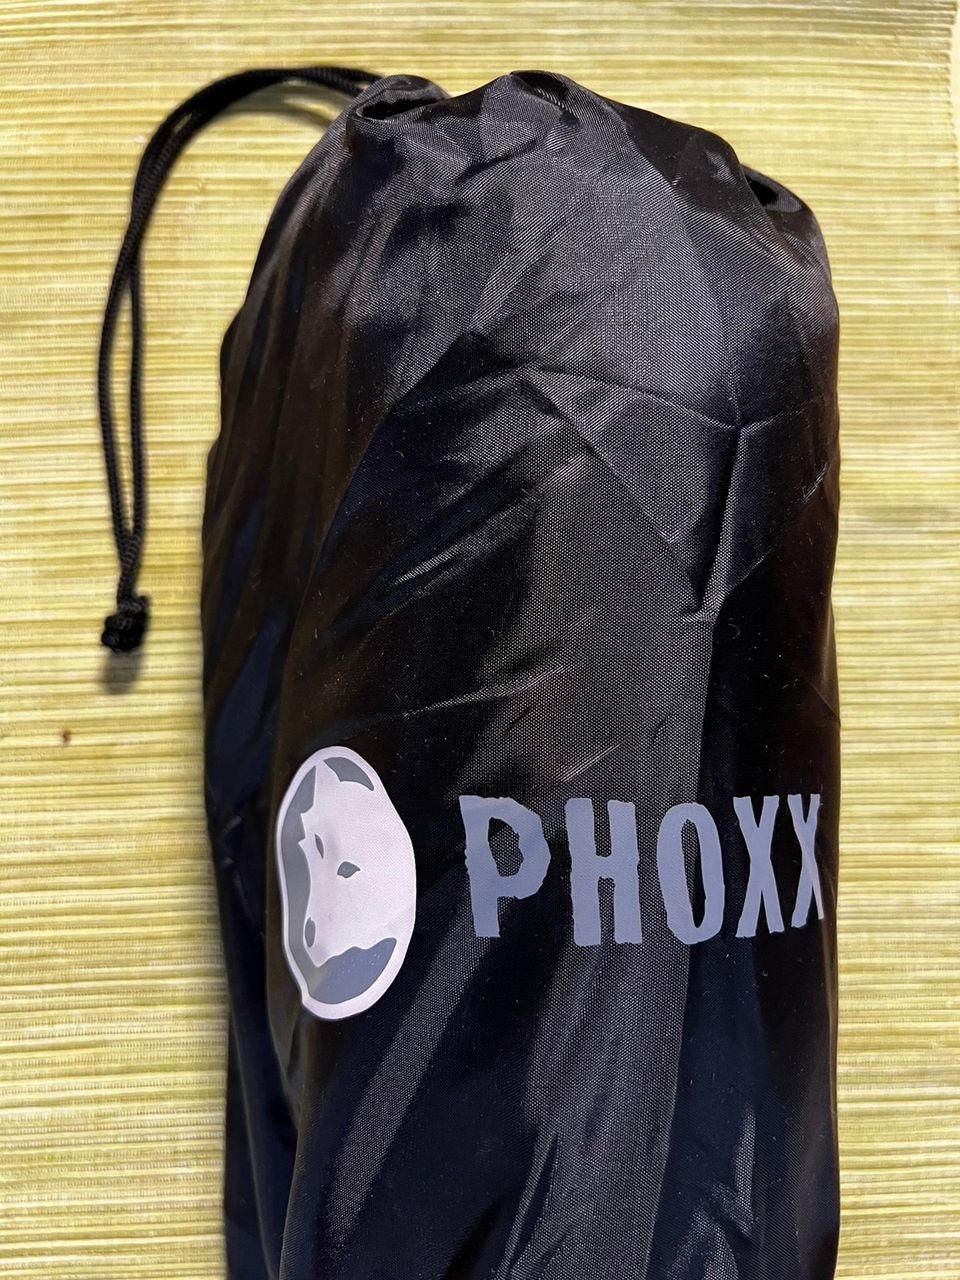 Phoxx retkityyny